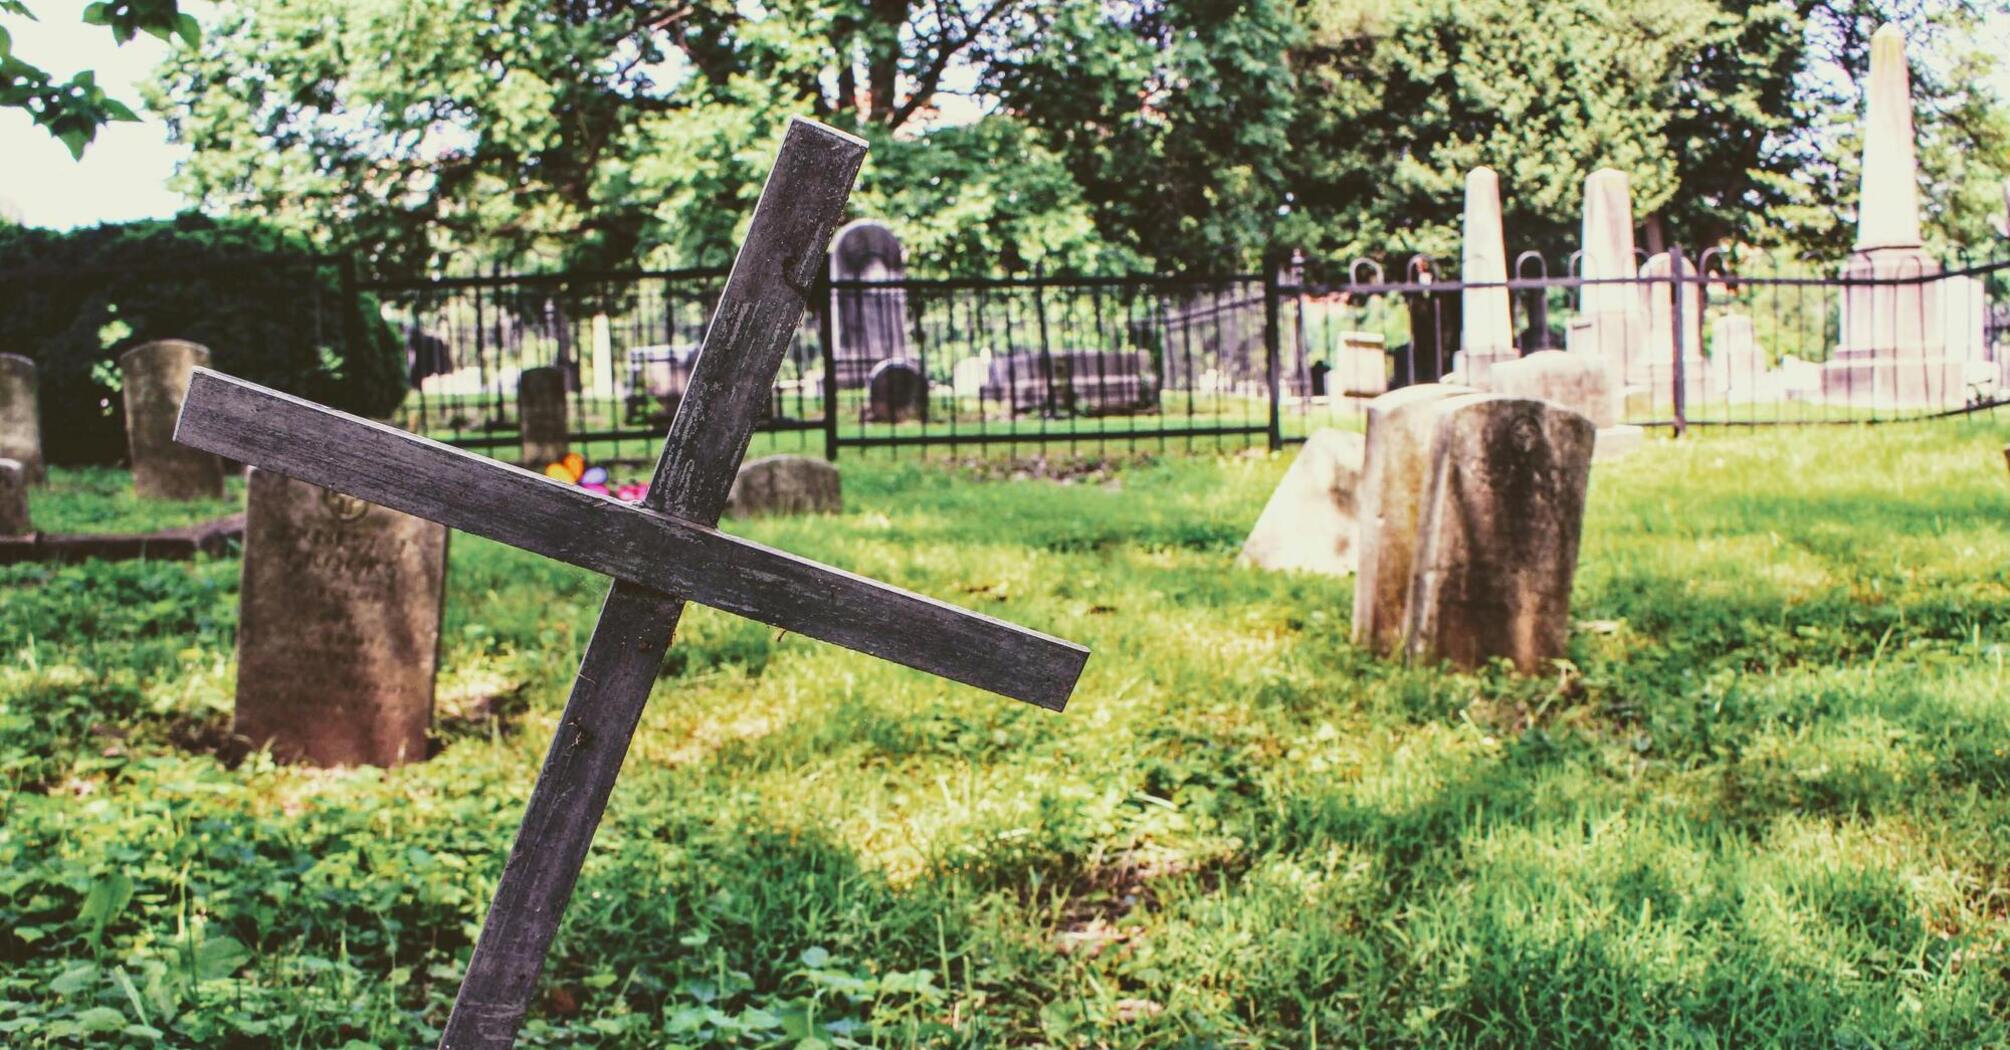 Фото со смертью: какие последствия могут быть, если снимать кладбище и похороны